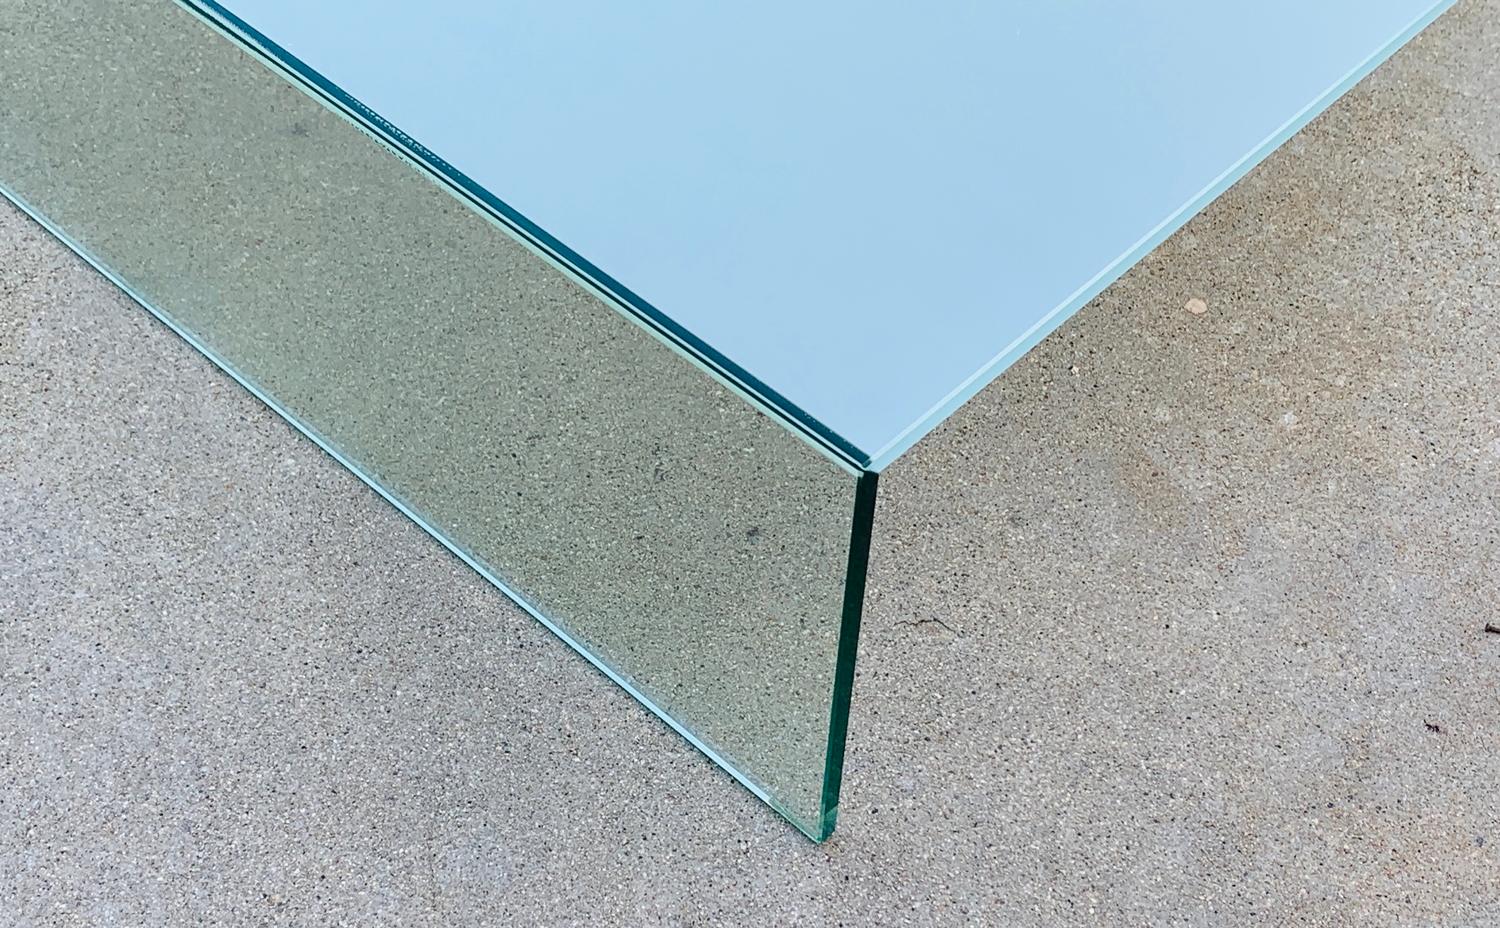 Wir stellen den exquisiten Glas-Couchtisch von Piero Lissoni für Glas Italia, Italien 2018, vor. Dieses atemberaubende Möbelstück vereint modernes Design, italienische Handwerkskunst und einen Hauch von Eleganz und wertet jeden Wohnraum auf.

Der